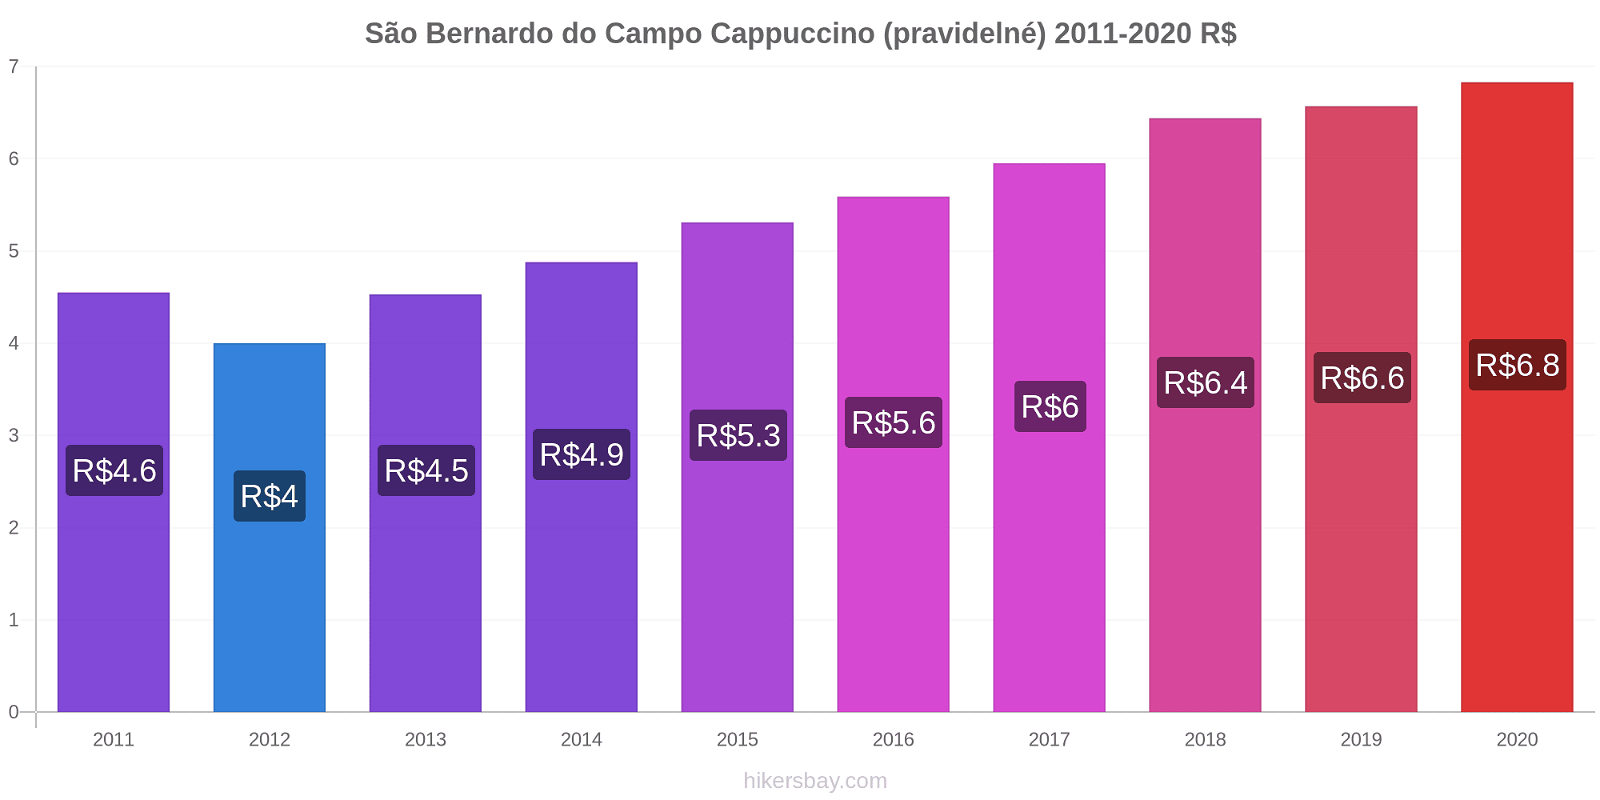 São Bernardo do Campo změny cen Cappuccino (pravidelné) hikersbay.com